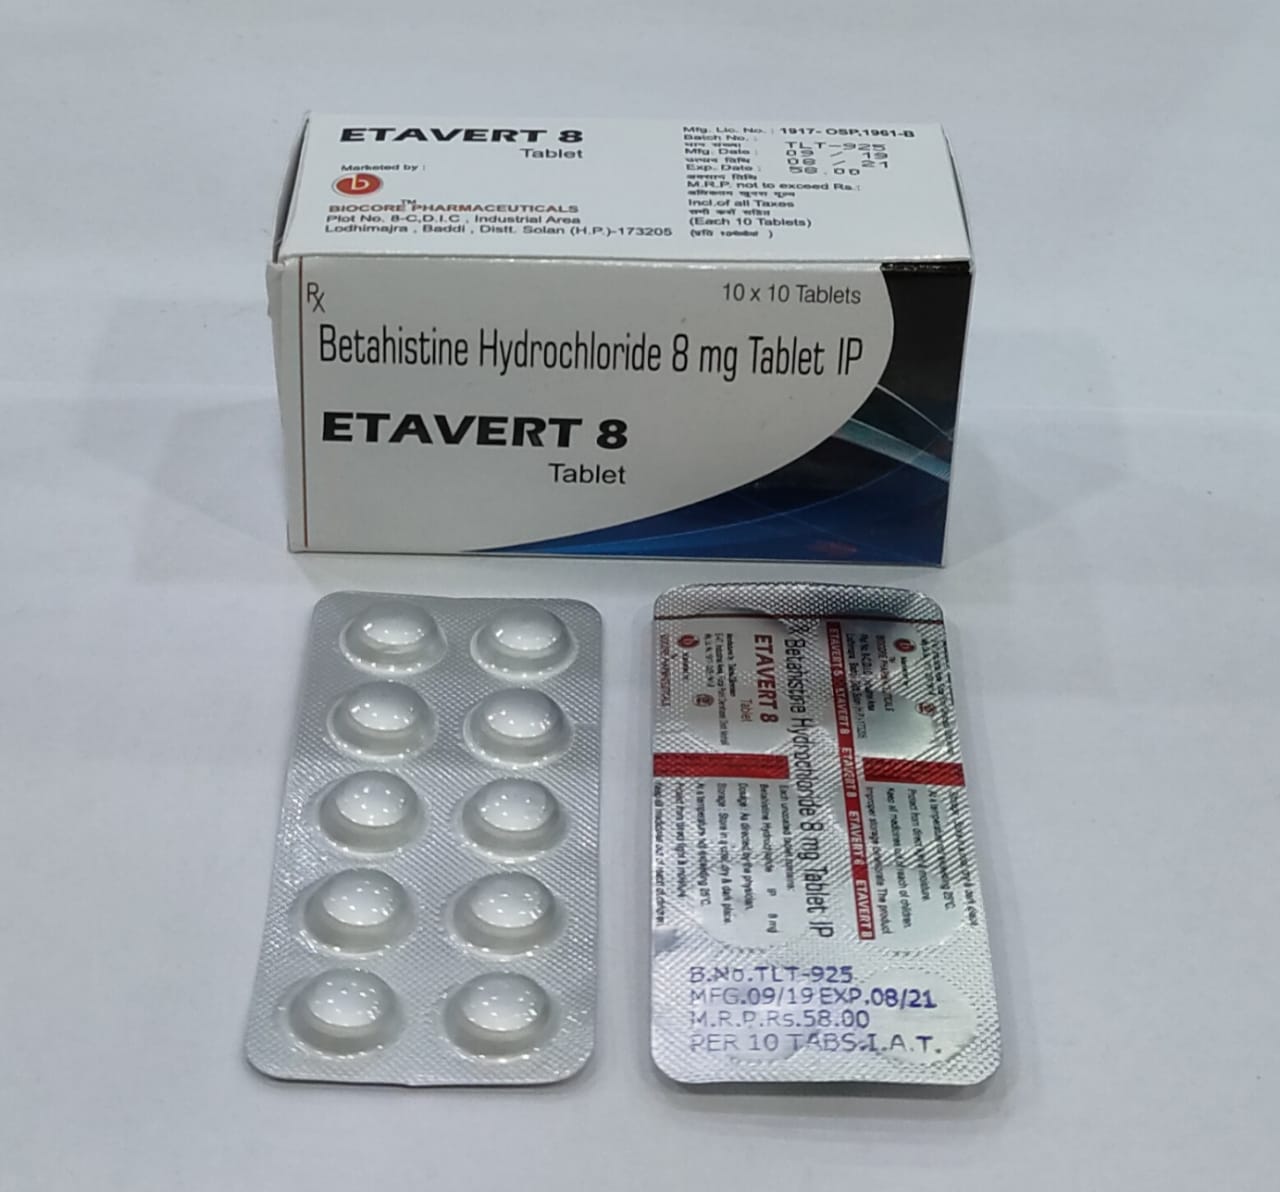 ETAVERT-8 Tablets